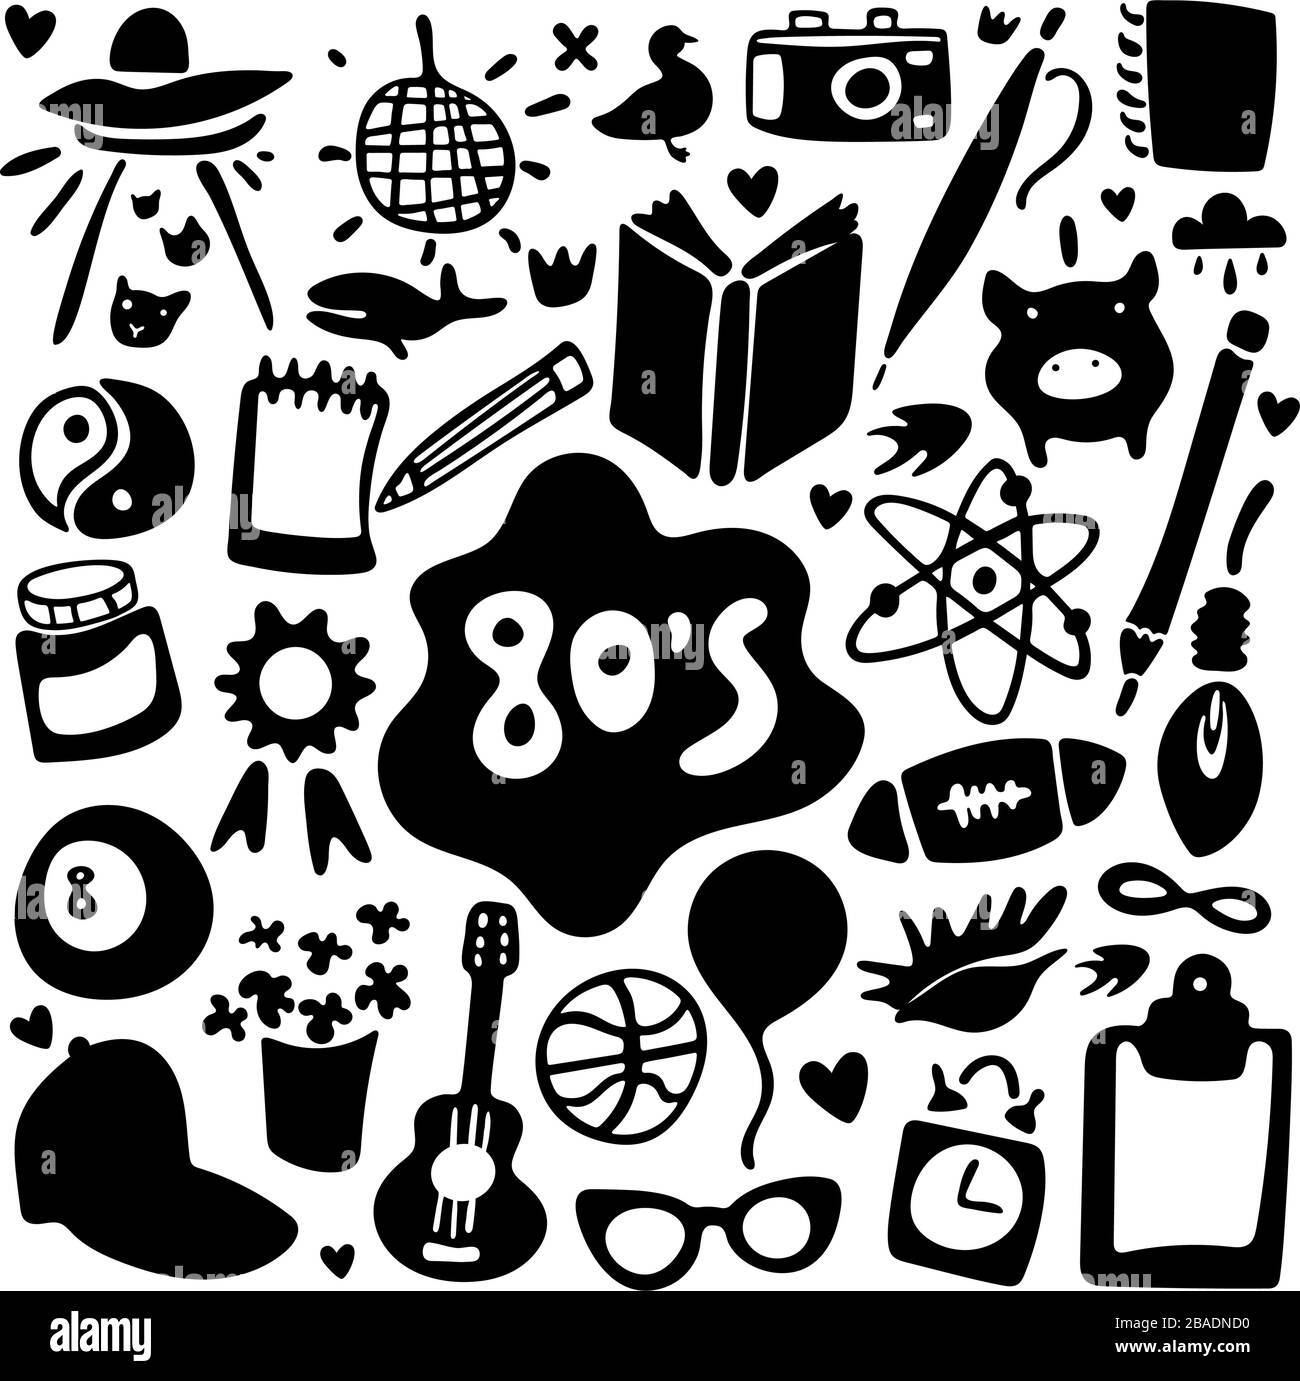 Achtziger. Schwarz-weiß lustiger Satz von Cartoon-Aufklebern und -Symbolen im Doodle-Stil. Aufkleber, Symbole, Emoji, Stifte oder Flecken im Comic-Stil der 80er Jahre Stock Vektor